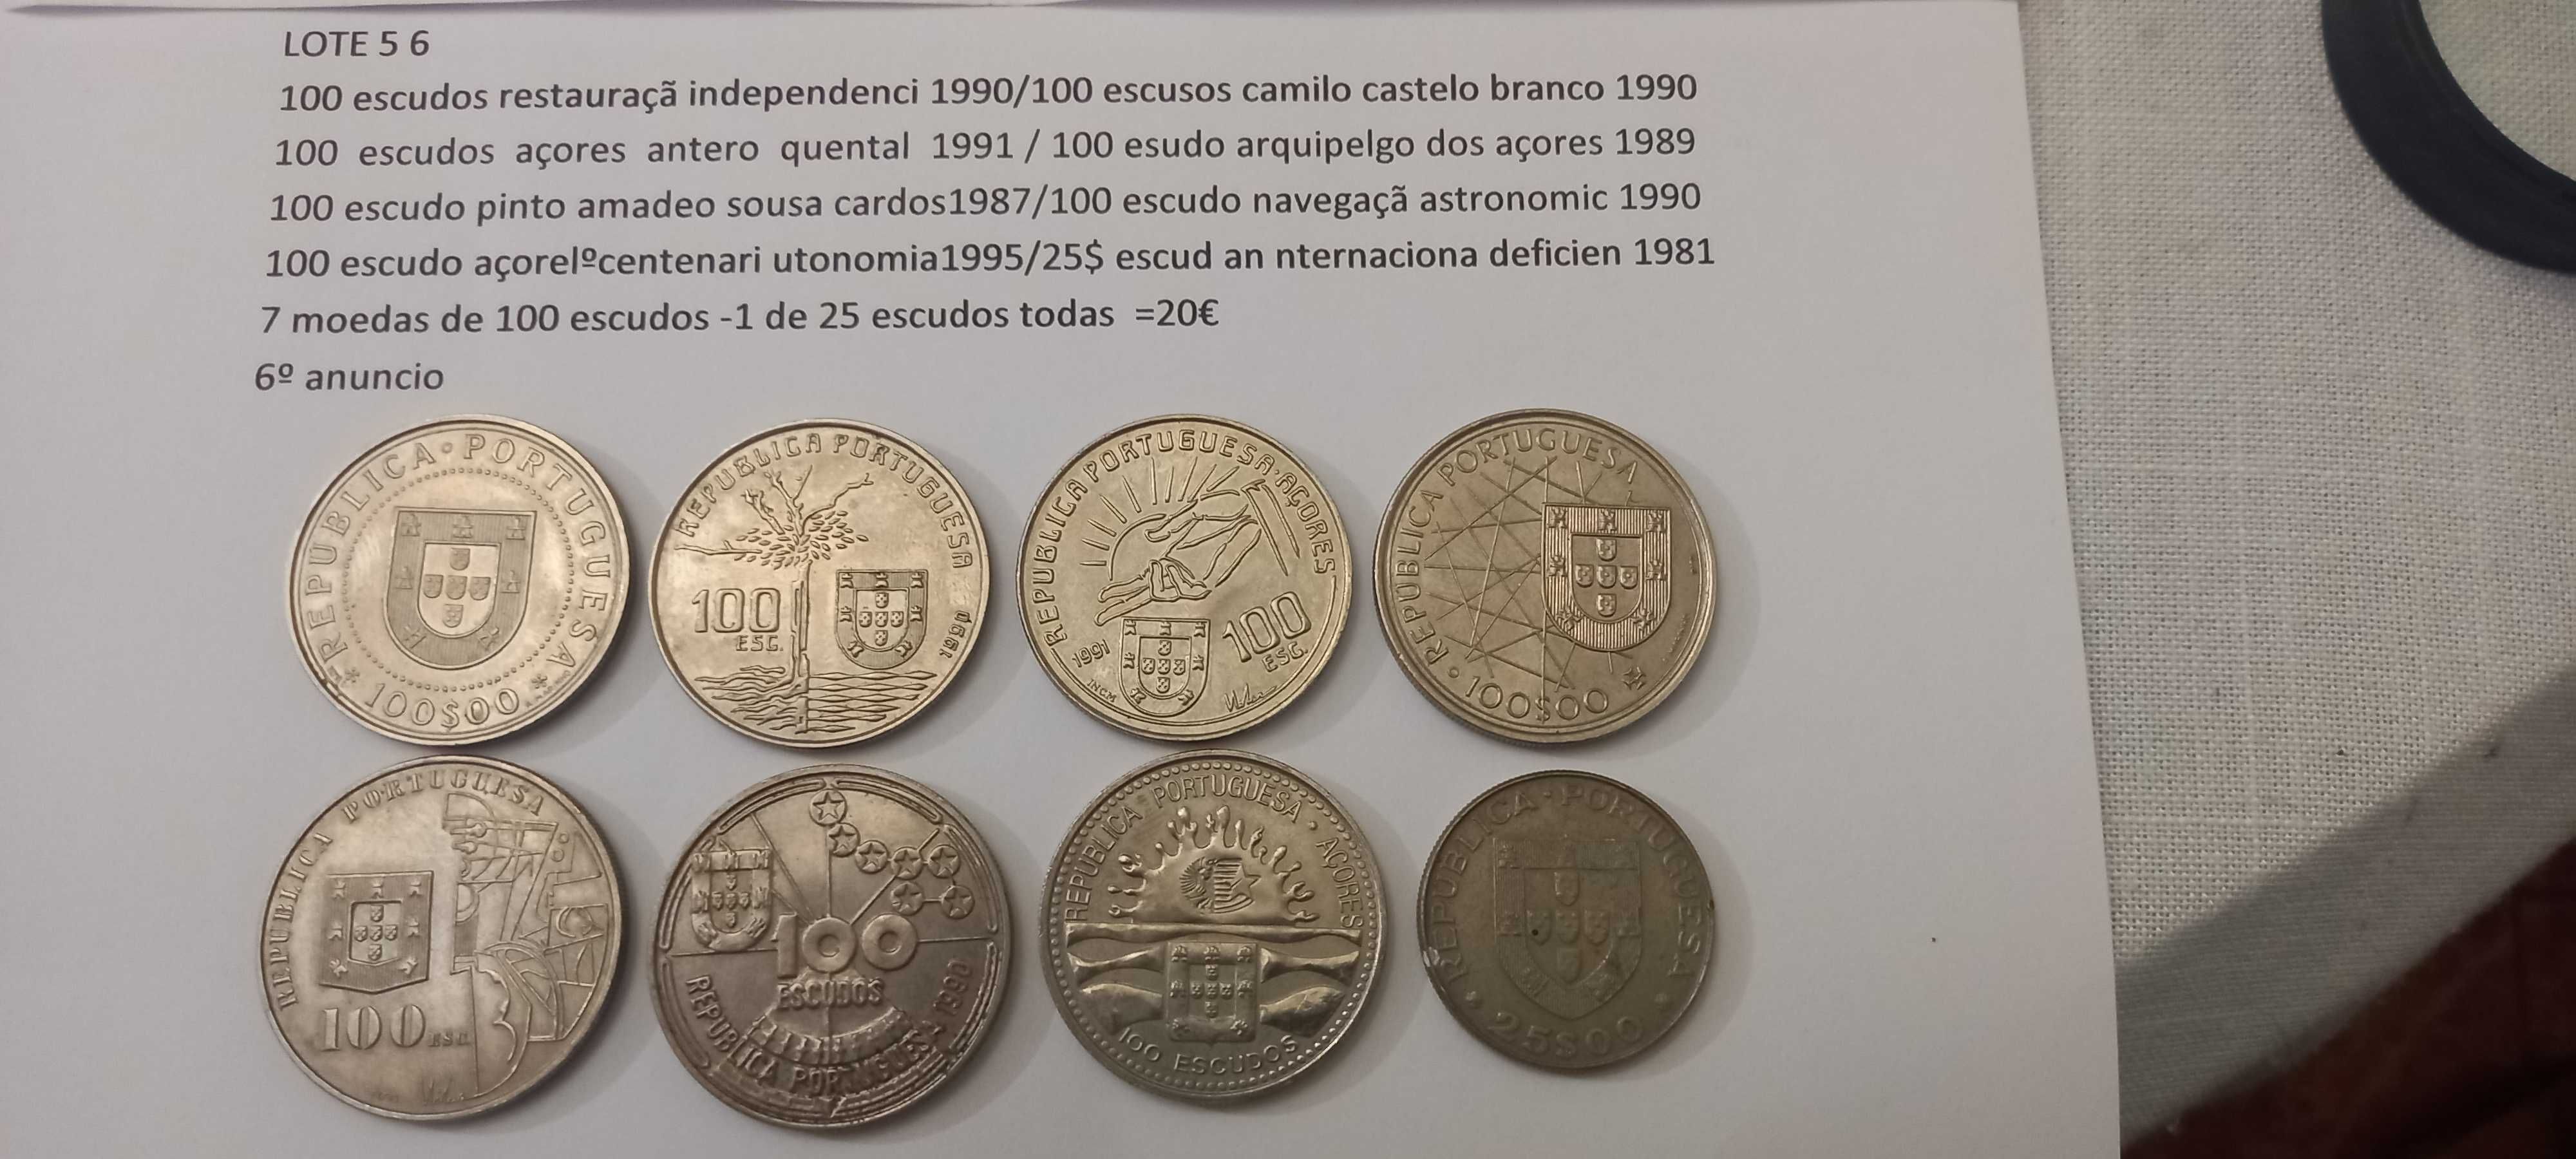 moedas comemorativas portuguesas d 25$00 escudos.5$00.2$50 8ºanuncio